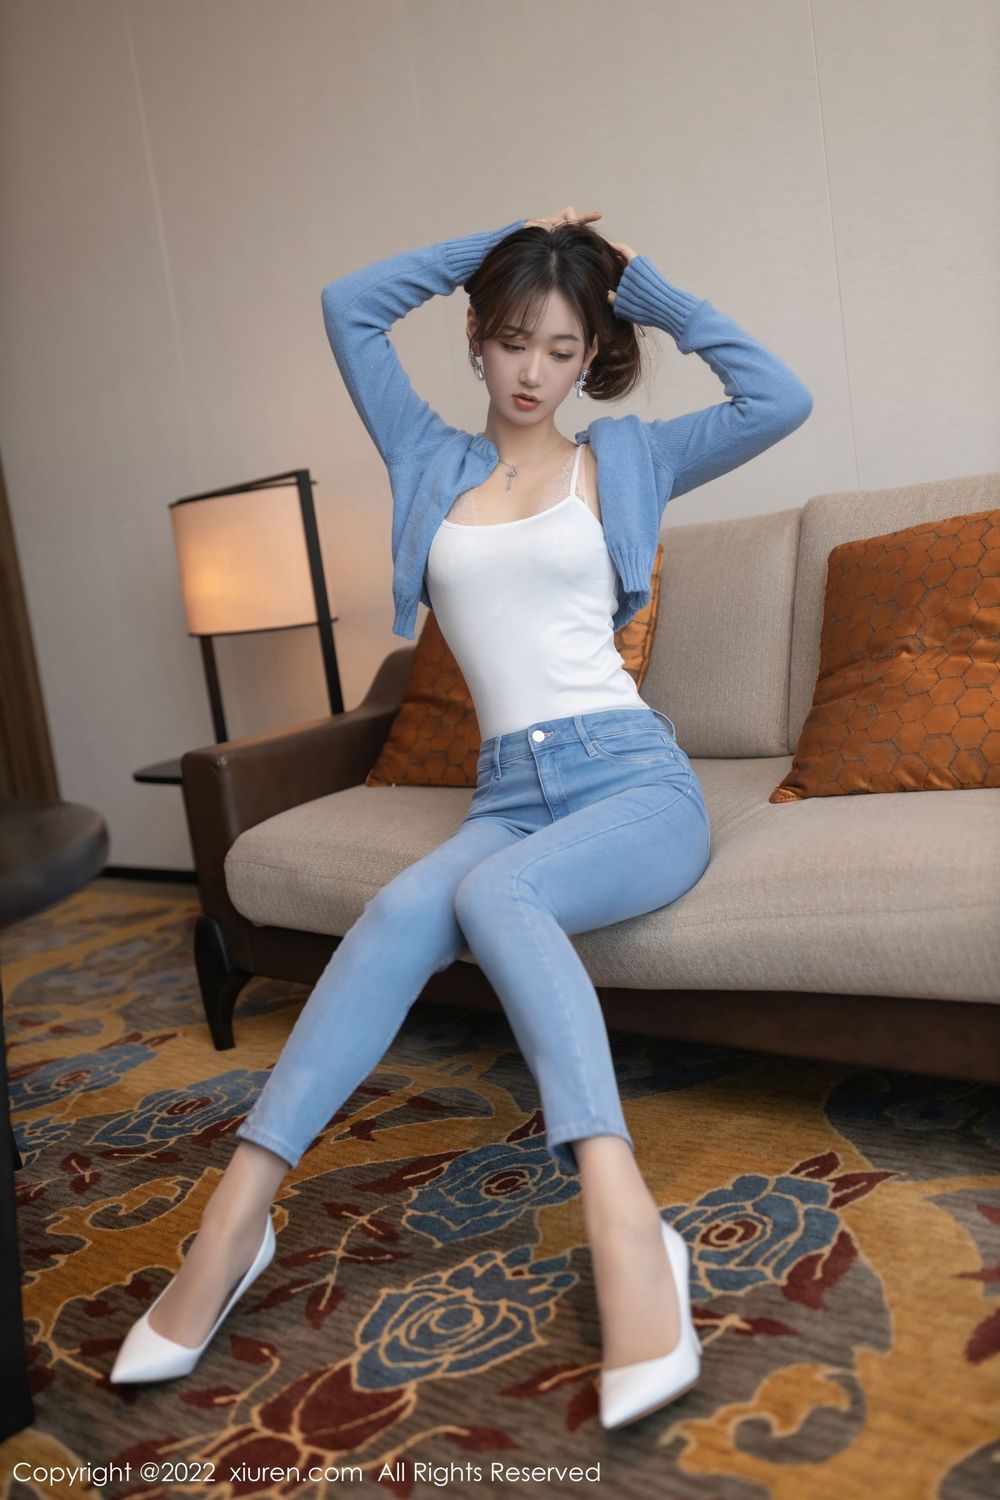 美女模特唐安琪淡蓝色上衣搭配原色丝袜系列写真